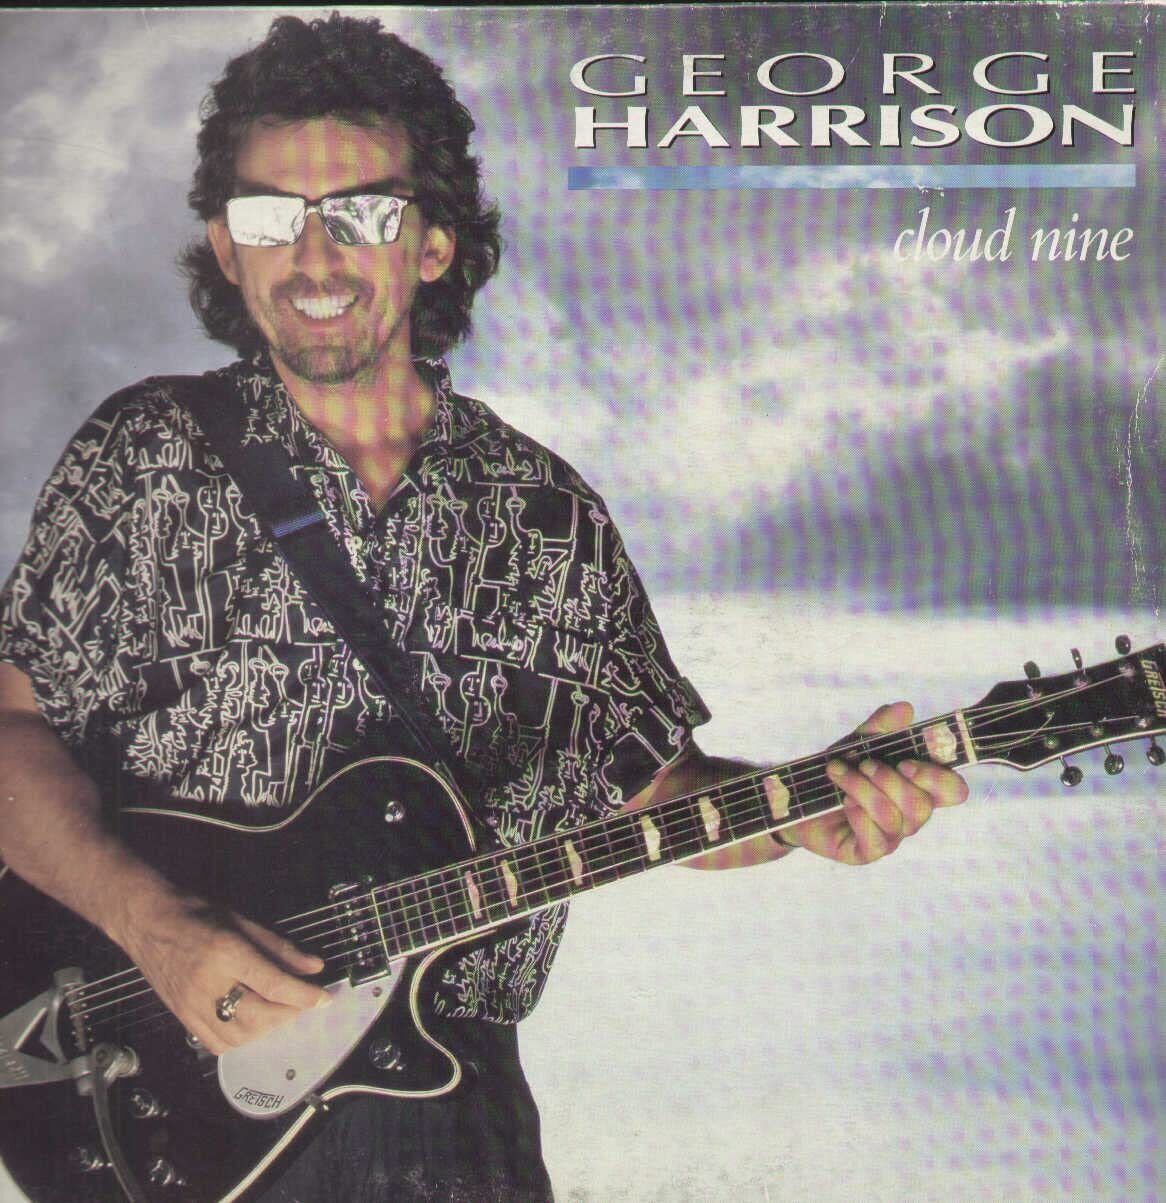 George Harrison Cloud nine (1987) (Vinyl) (UK IMPORT)